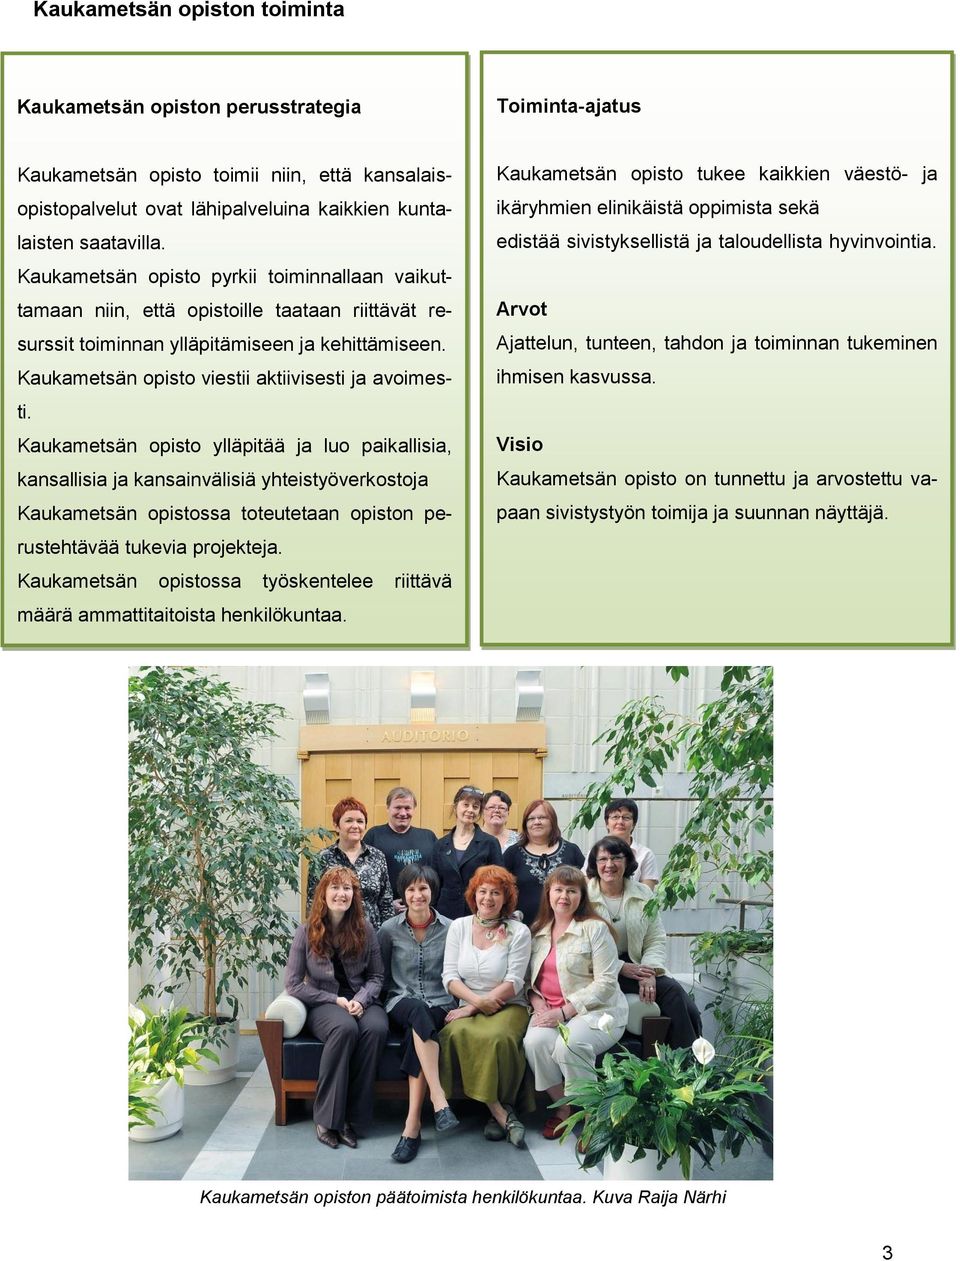 Kaukametsän opisto ylläpitää ja luo paikallisia, kansallisia ja kansainvälisiä yhteistyöverkostoja Kaukametsän opistossa toteutetaan opiston perustehtävää tukevia projekteja.